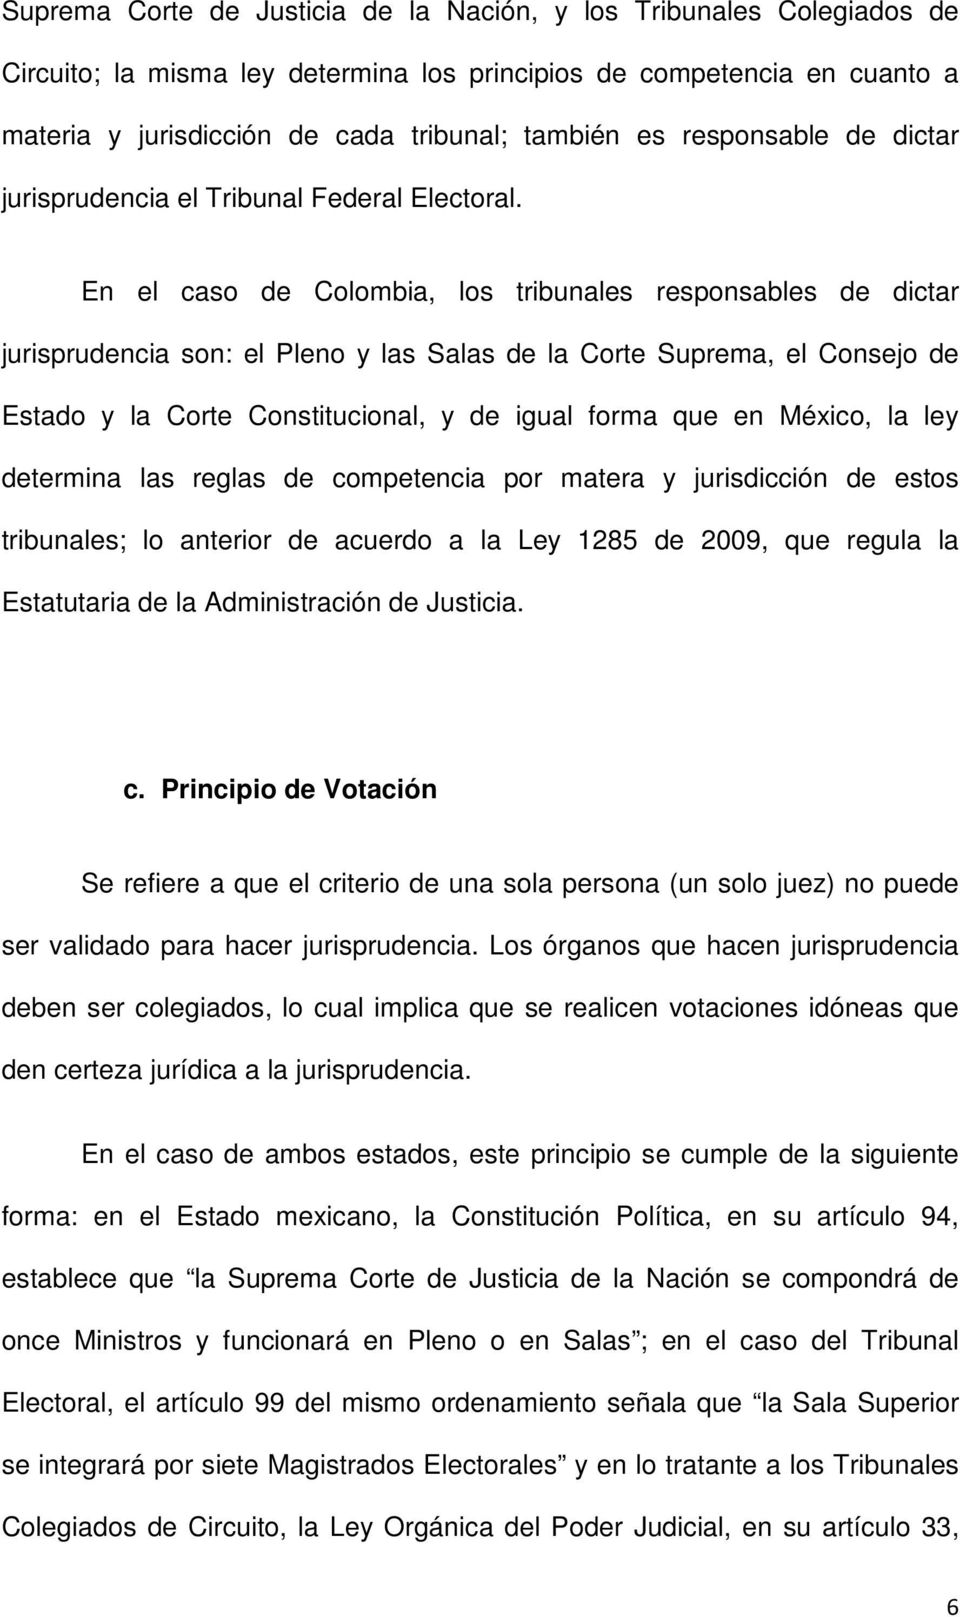 En el caso de Colombia, los tribunales responsables de dictar jurisprudencia son: el Pleno y las Salas de la Corte Suprema, el Consejo de Estado y la Corte Constitucional, y de igual forma que en